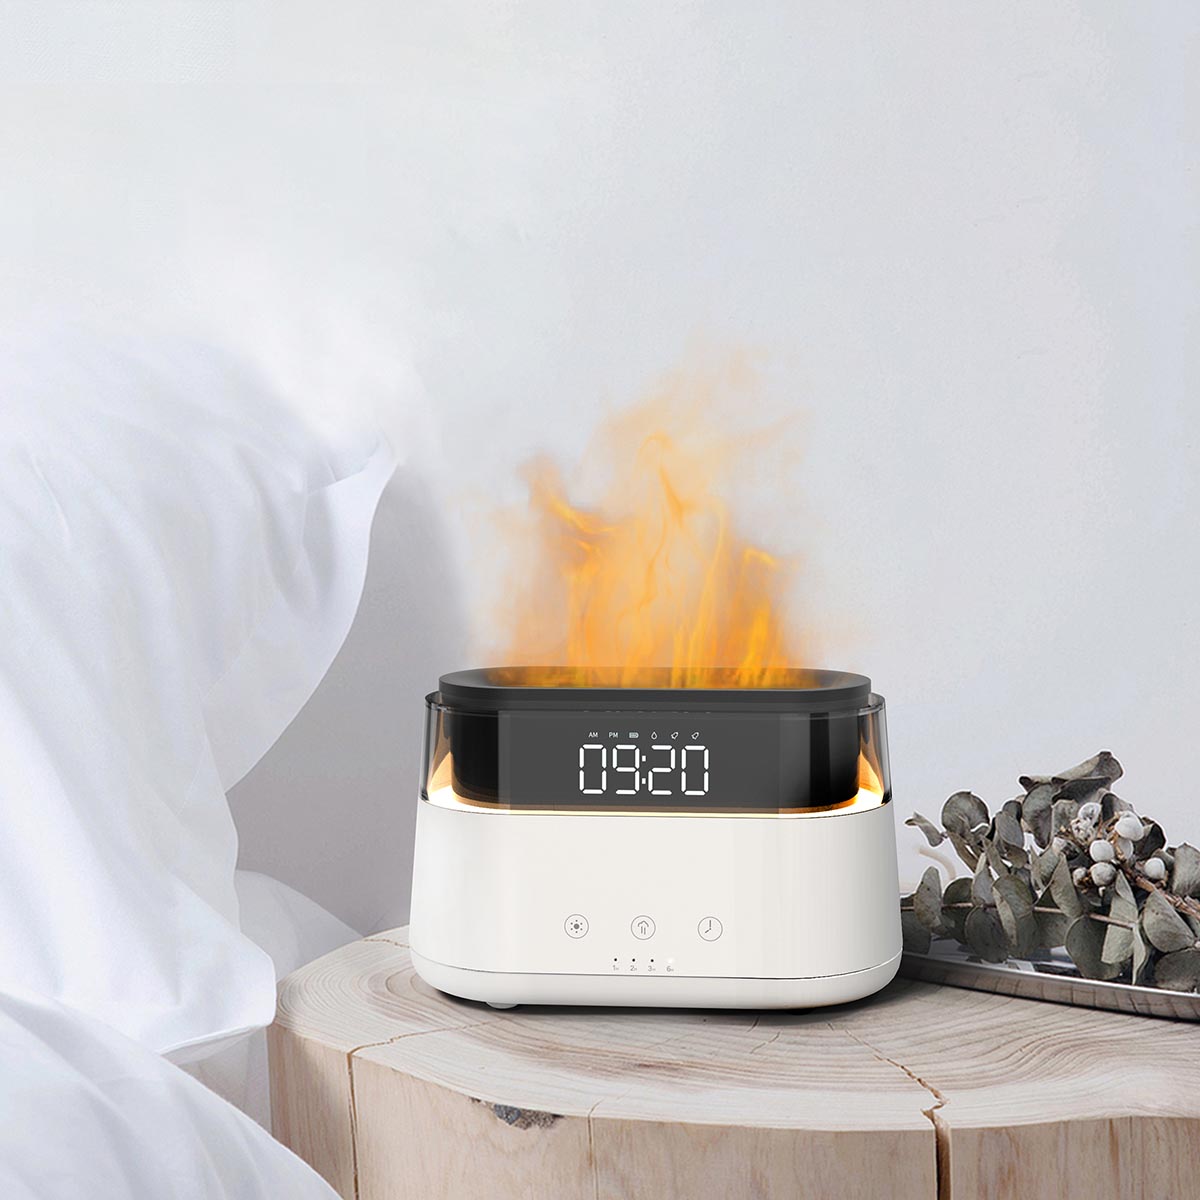 Amoovars - ALVA FLAME 丨 4合一 多功能用途智能香薰助眠火焰氛圍燈 加濕噴霧  數顯時鐘 搭配三檔色溫小夜燈